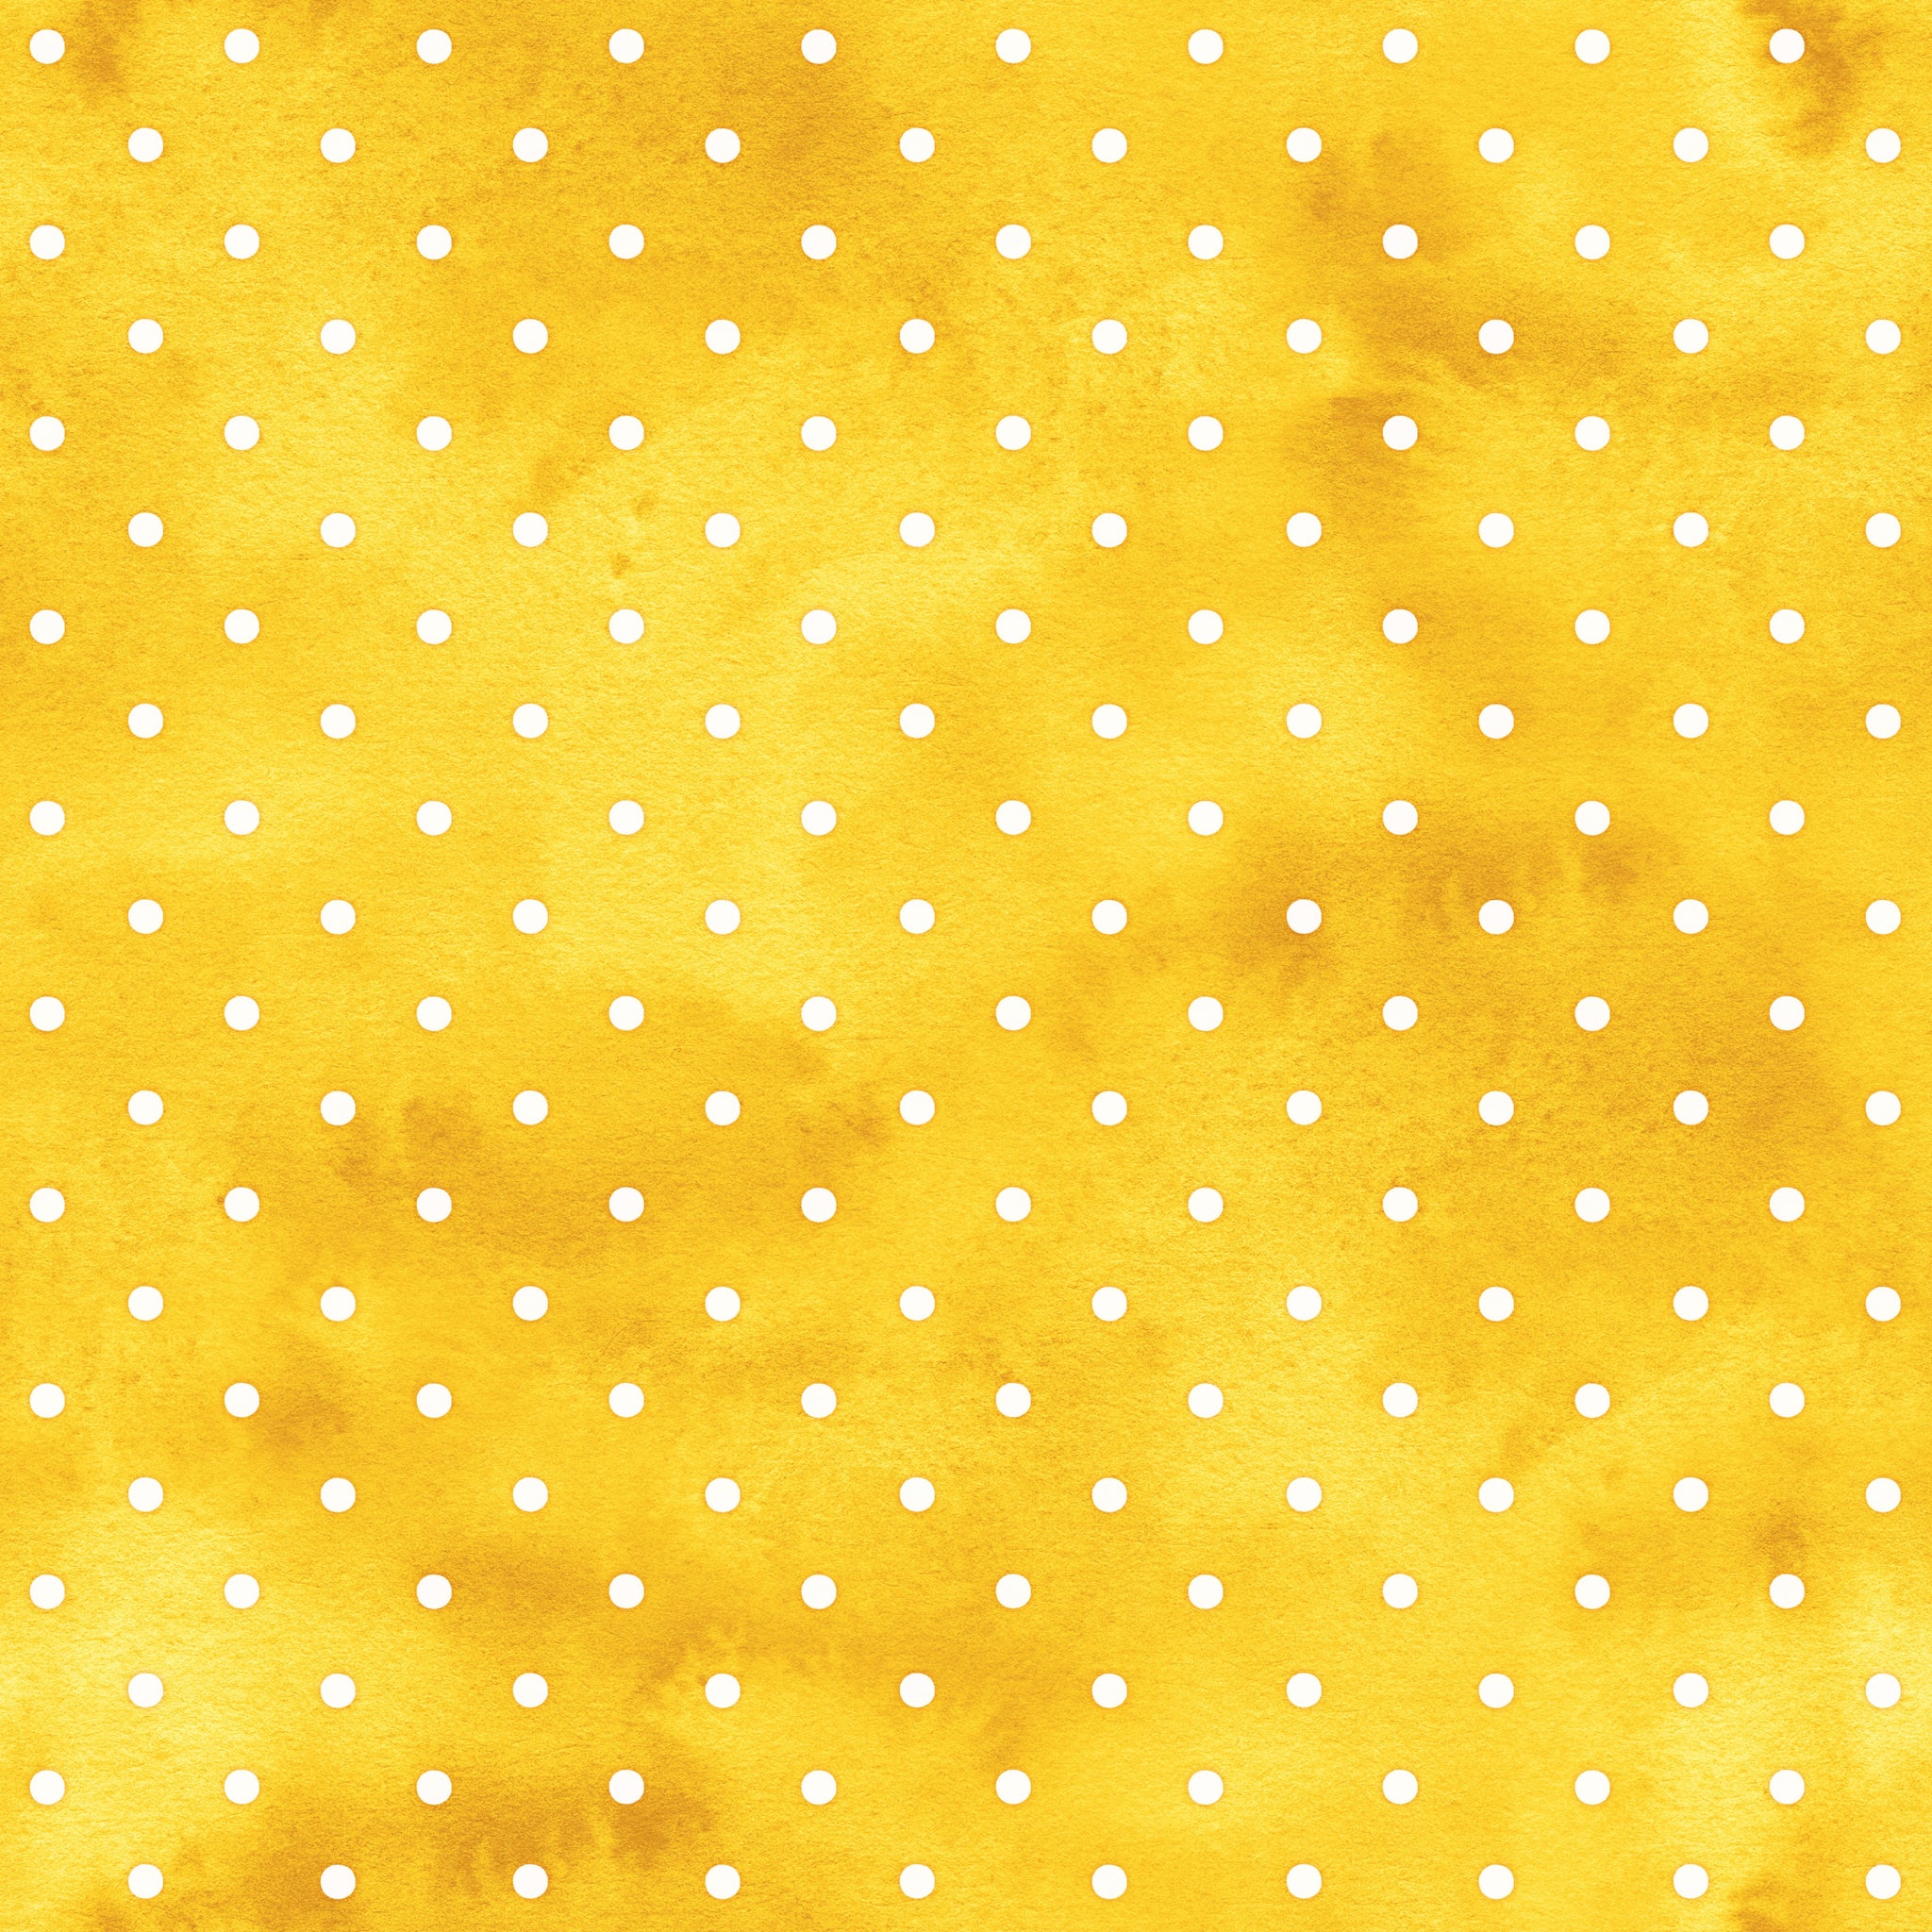 Lemon Squeeze Paper 5